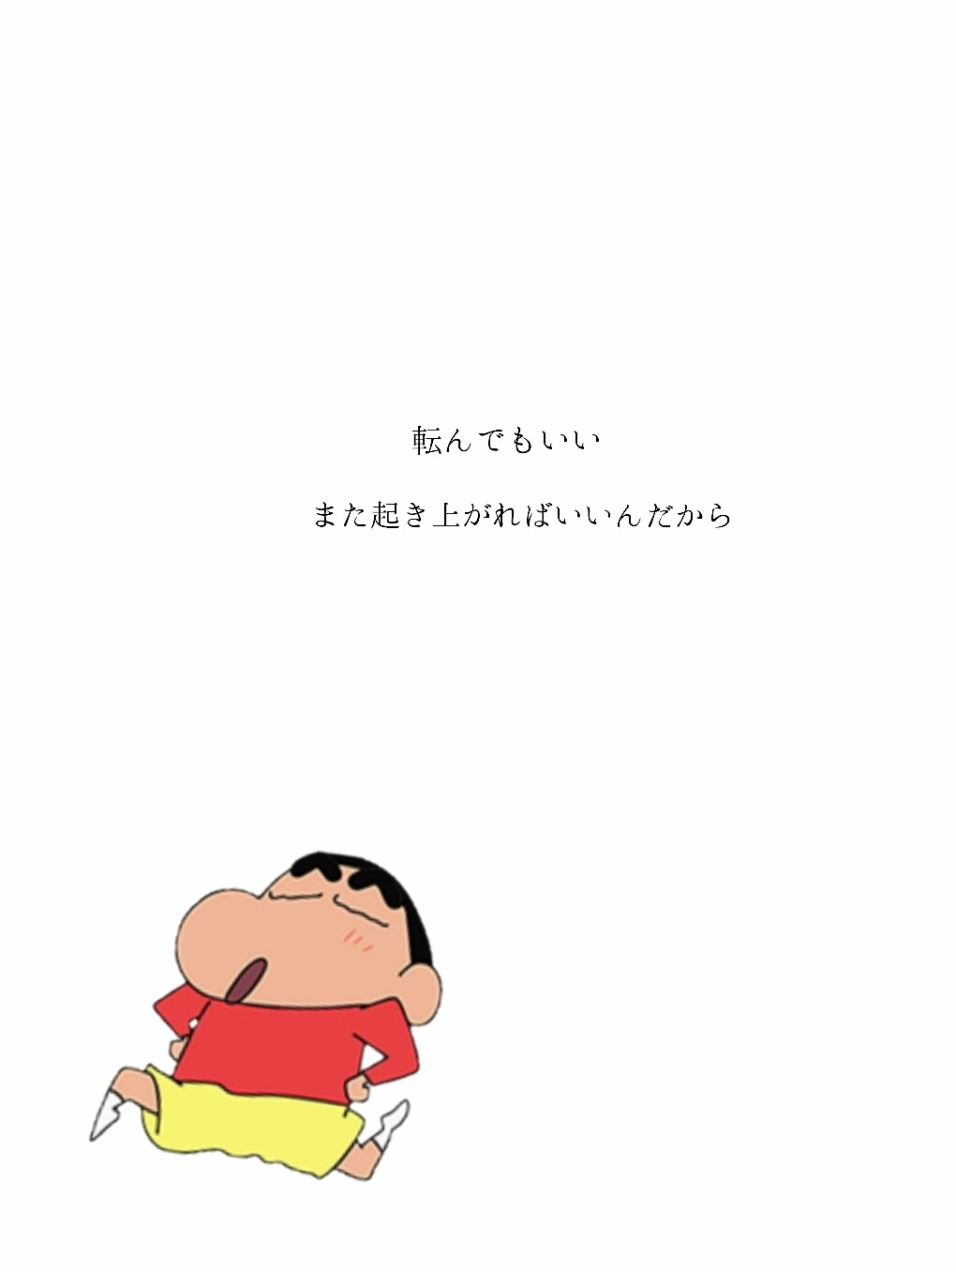 クレヨンしんちゃん 47002540 完全無料画像検索のプリ画像 bygmo